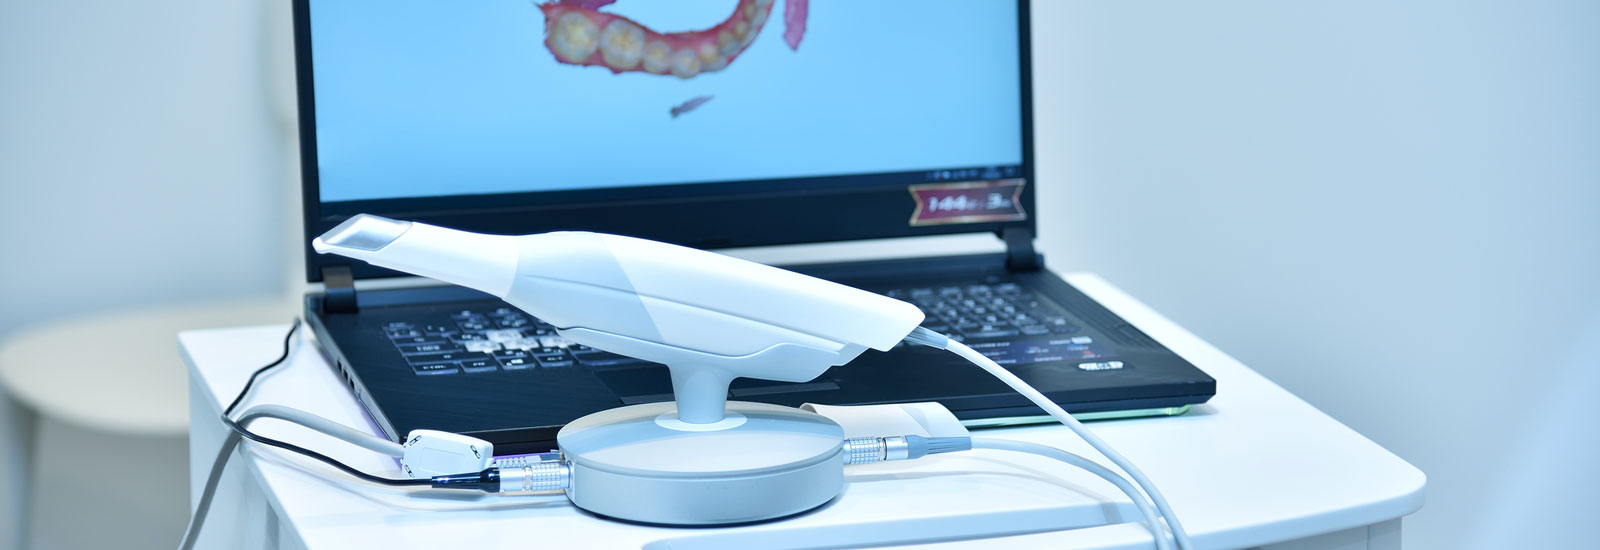 Dental intraoral 3d scanner